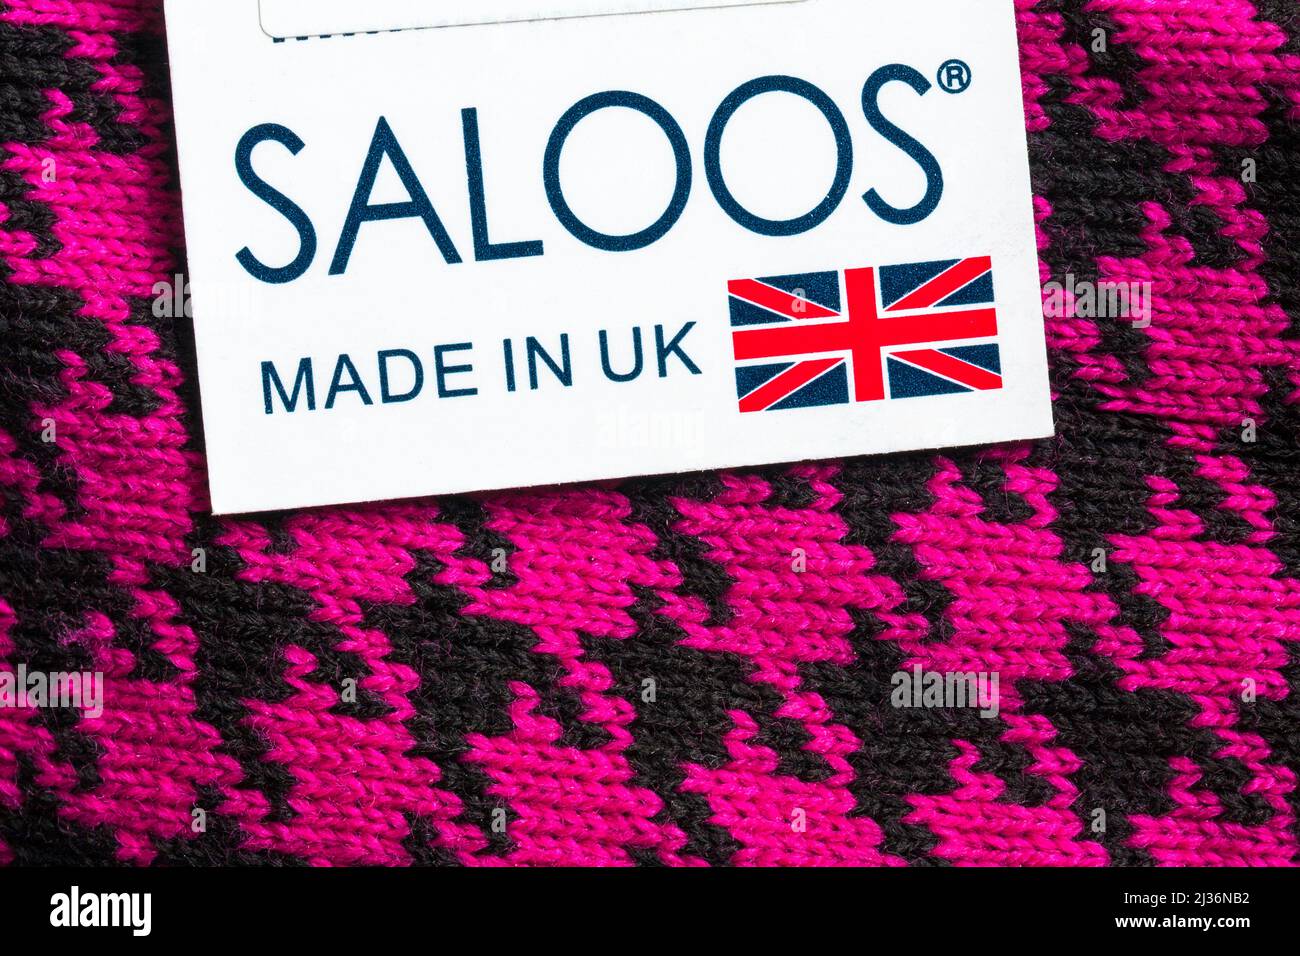 Etichetta Saloos Made in UK su capi di abbigliamento maglione rosa e nero Foto Stock